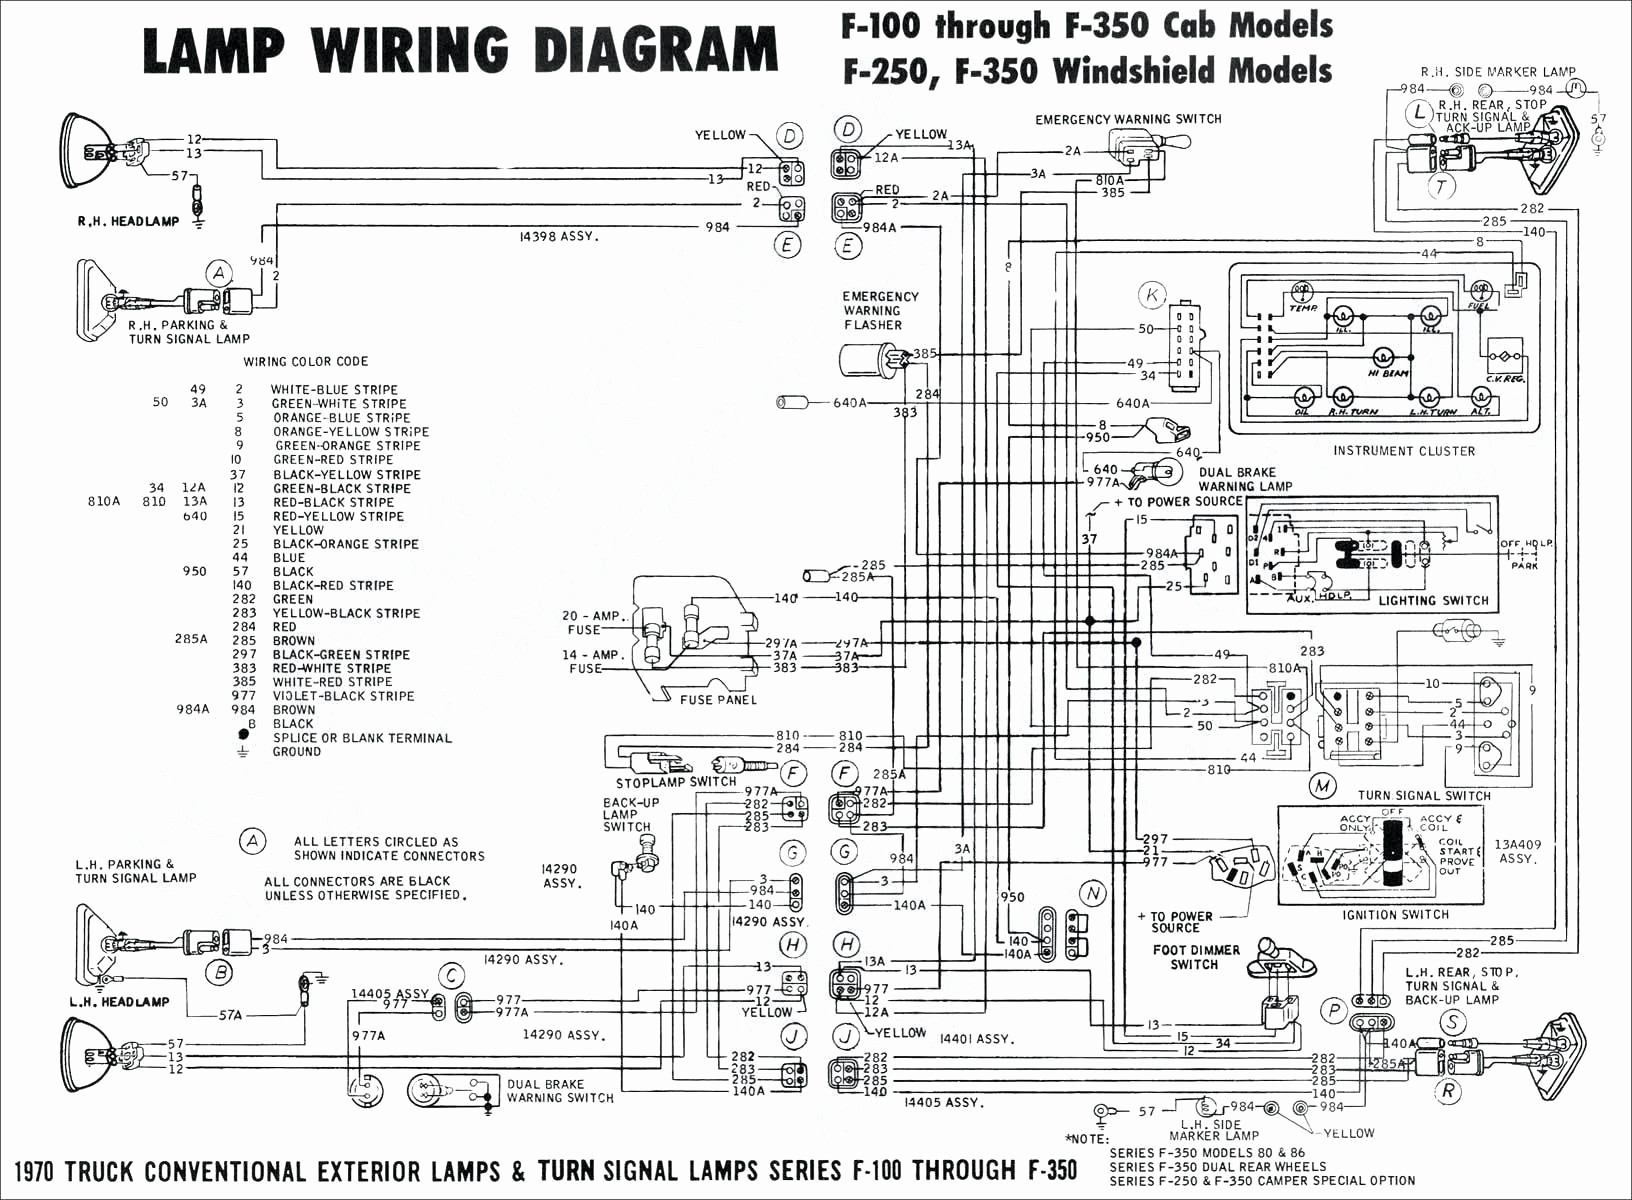 Ohv Engine Diagram 2004 Cadillac Escalade Trailer Wiring Worksheet and Wiring Diagram • Of Ohv Engine Diagram